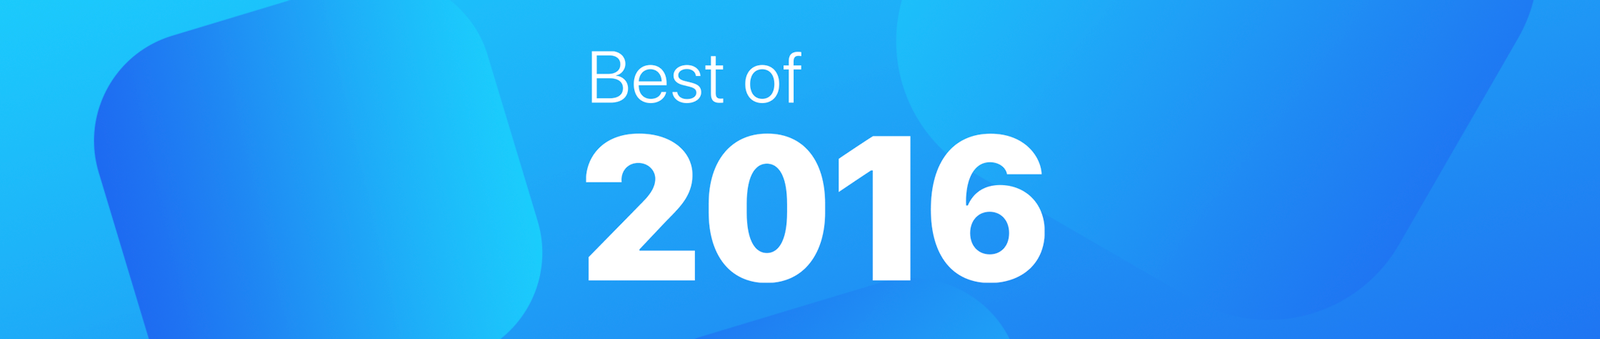 Le migliori App iOS del 2016